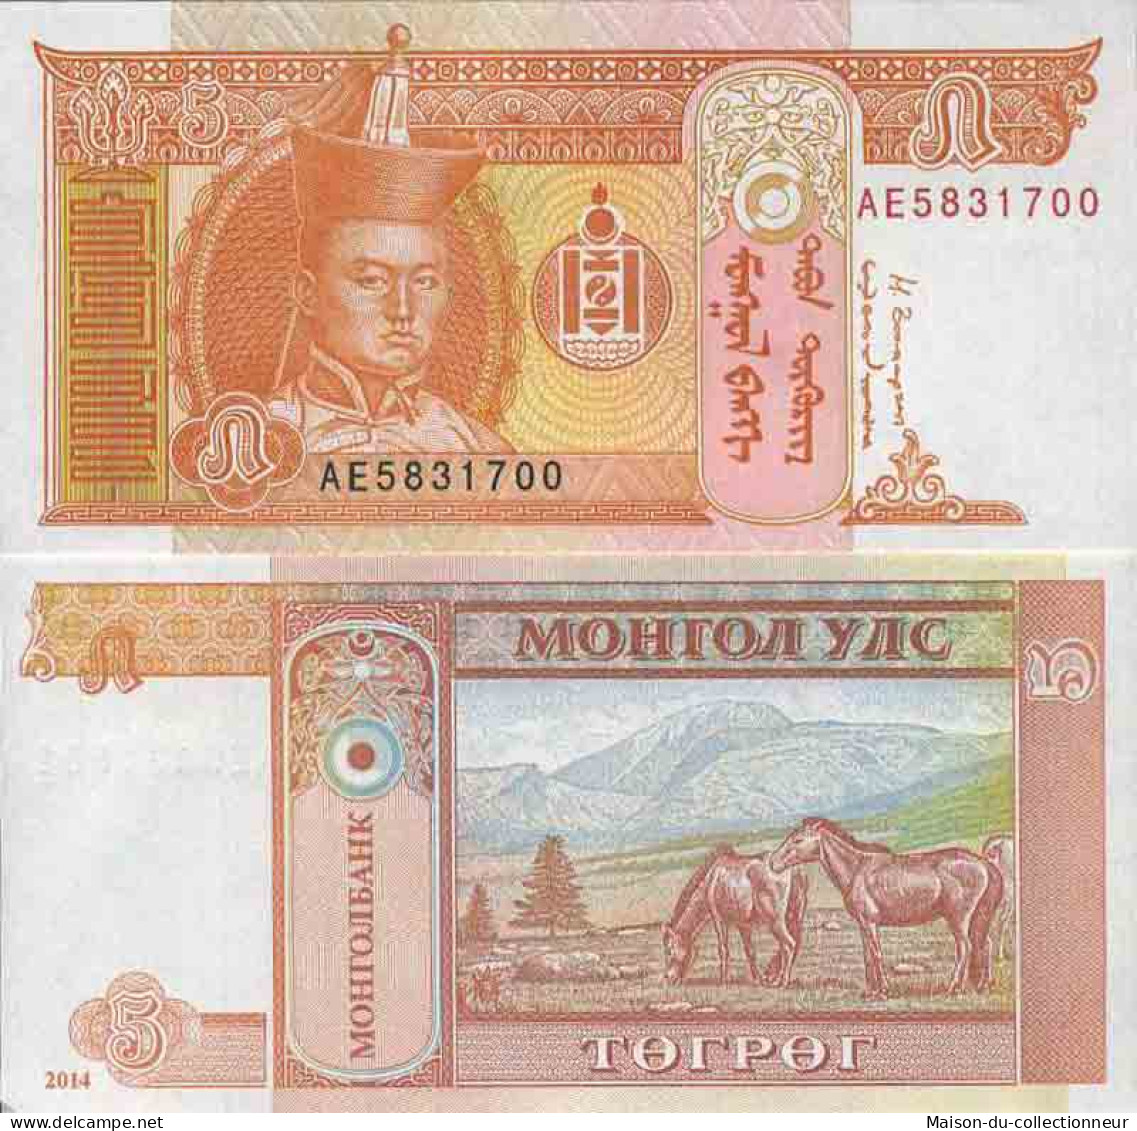 Billet De Banque Collection Mongolie - PK N° 61B - 5 Tugrik - Mongolie